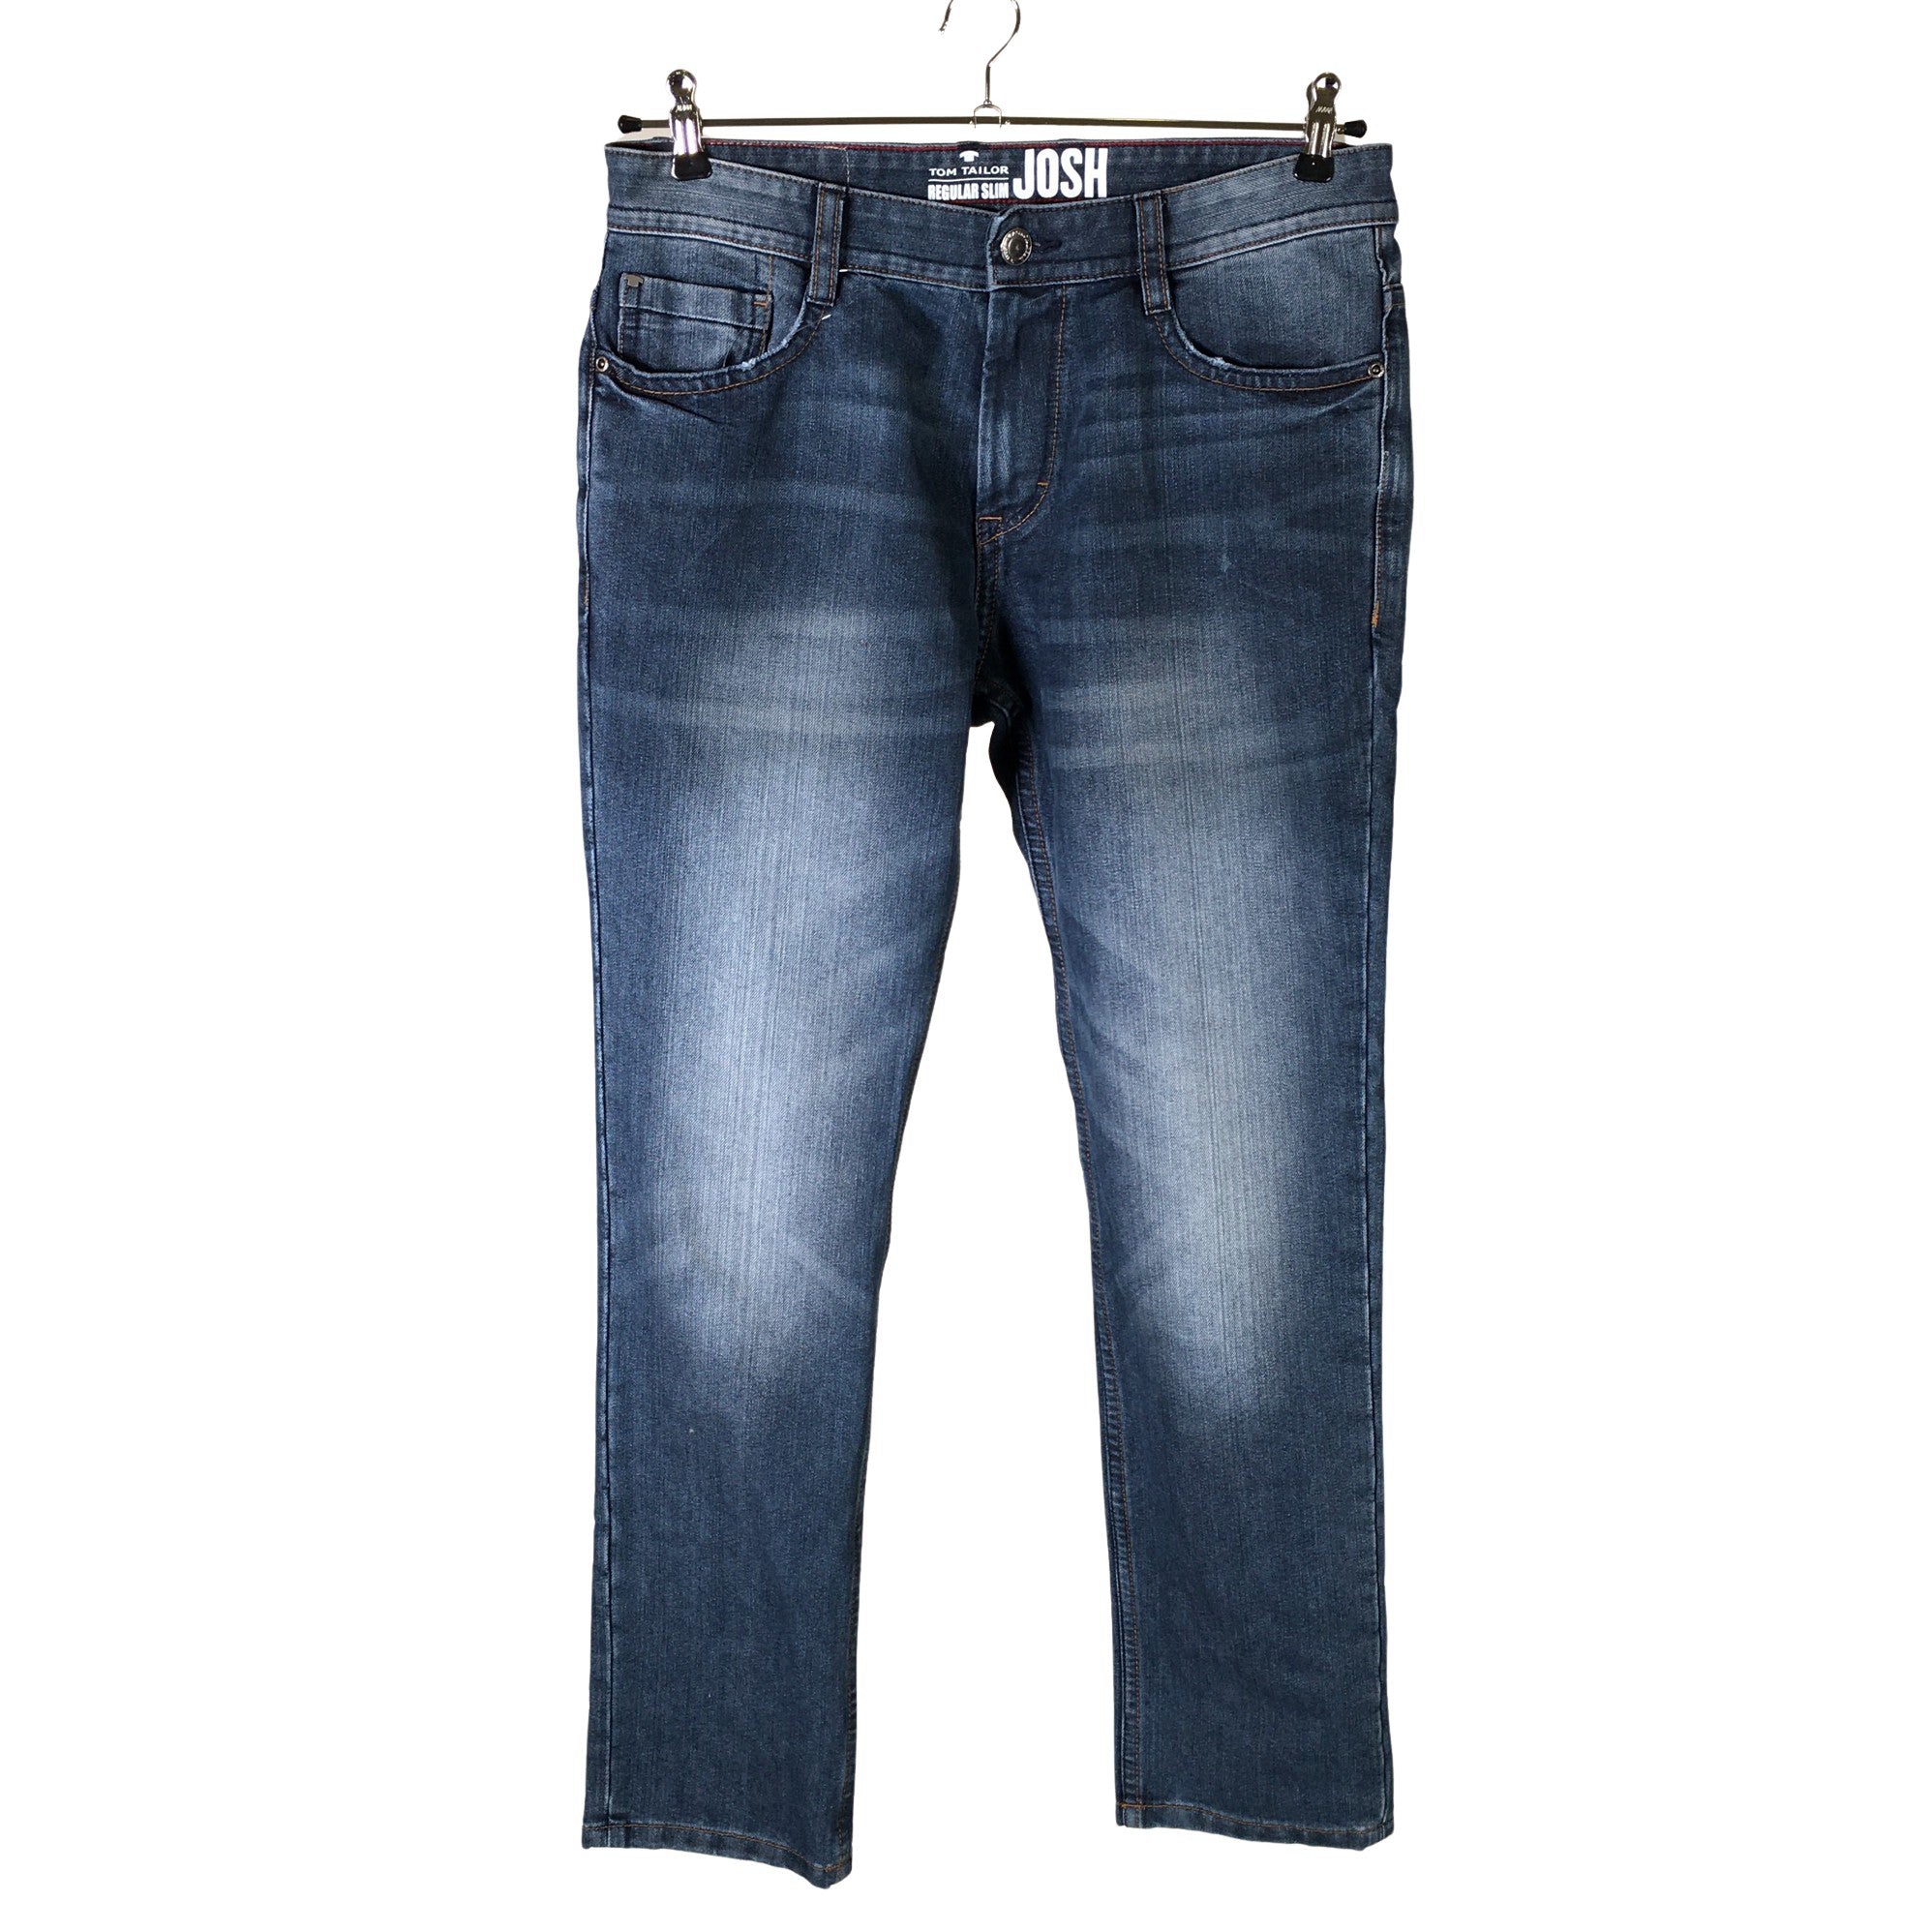 Buy TOM TAILOR Aedan Straight Jeans for Men online